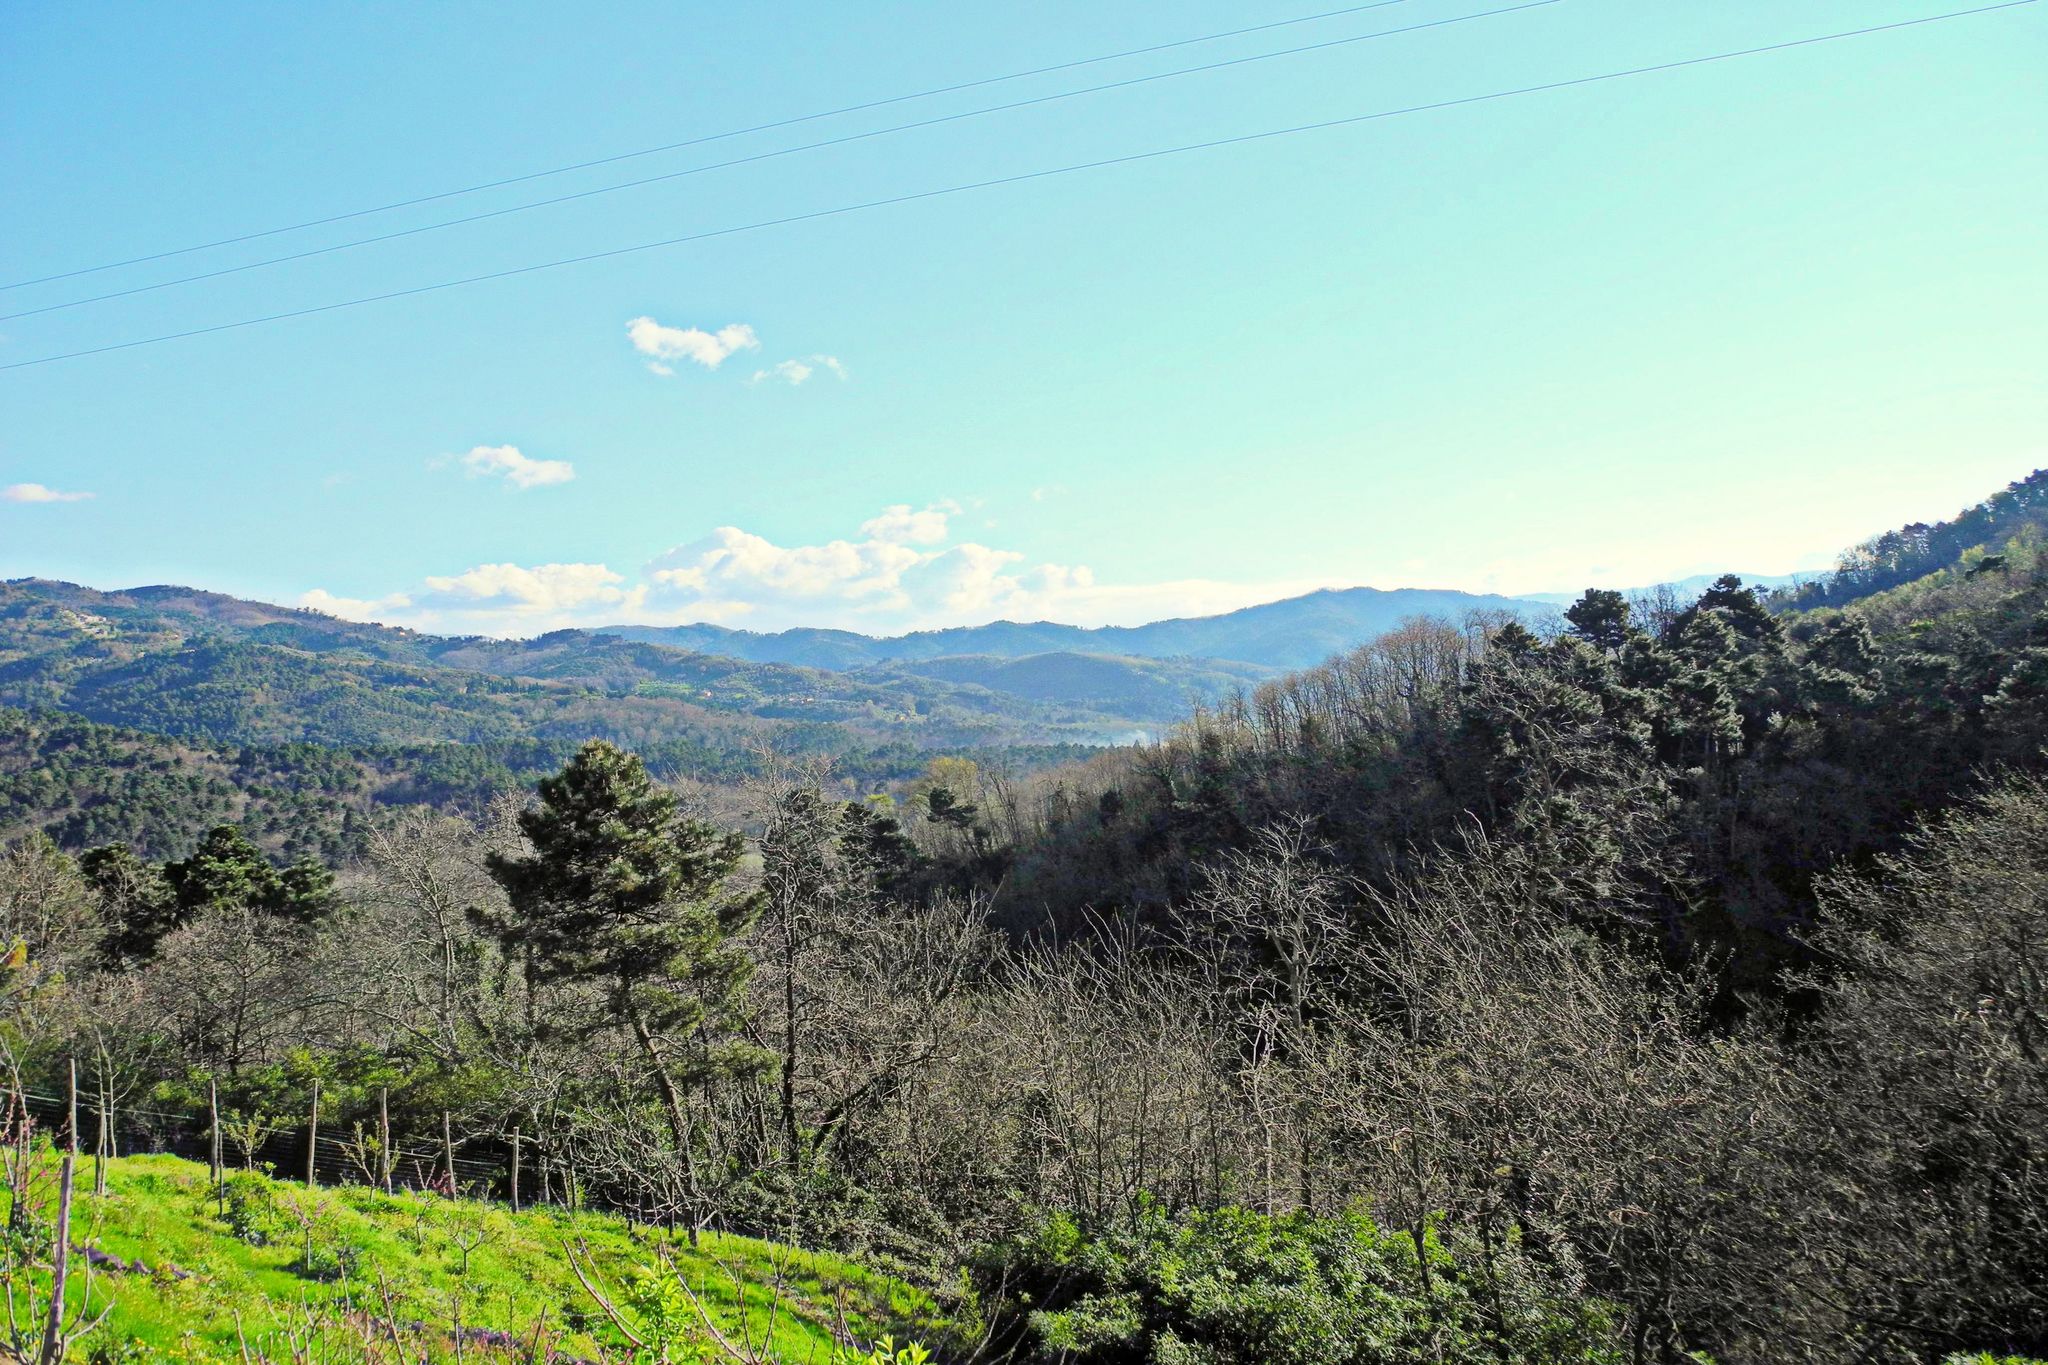 Woning in de heuvels rond Lucca, bij bedrijf dat biologische honing produceert